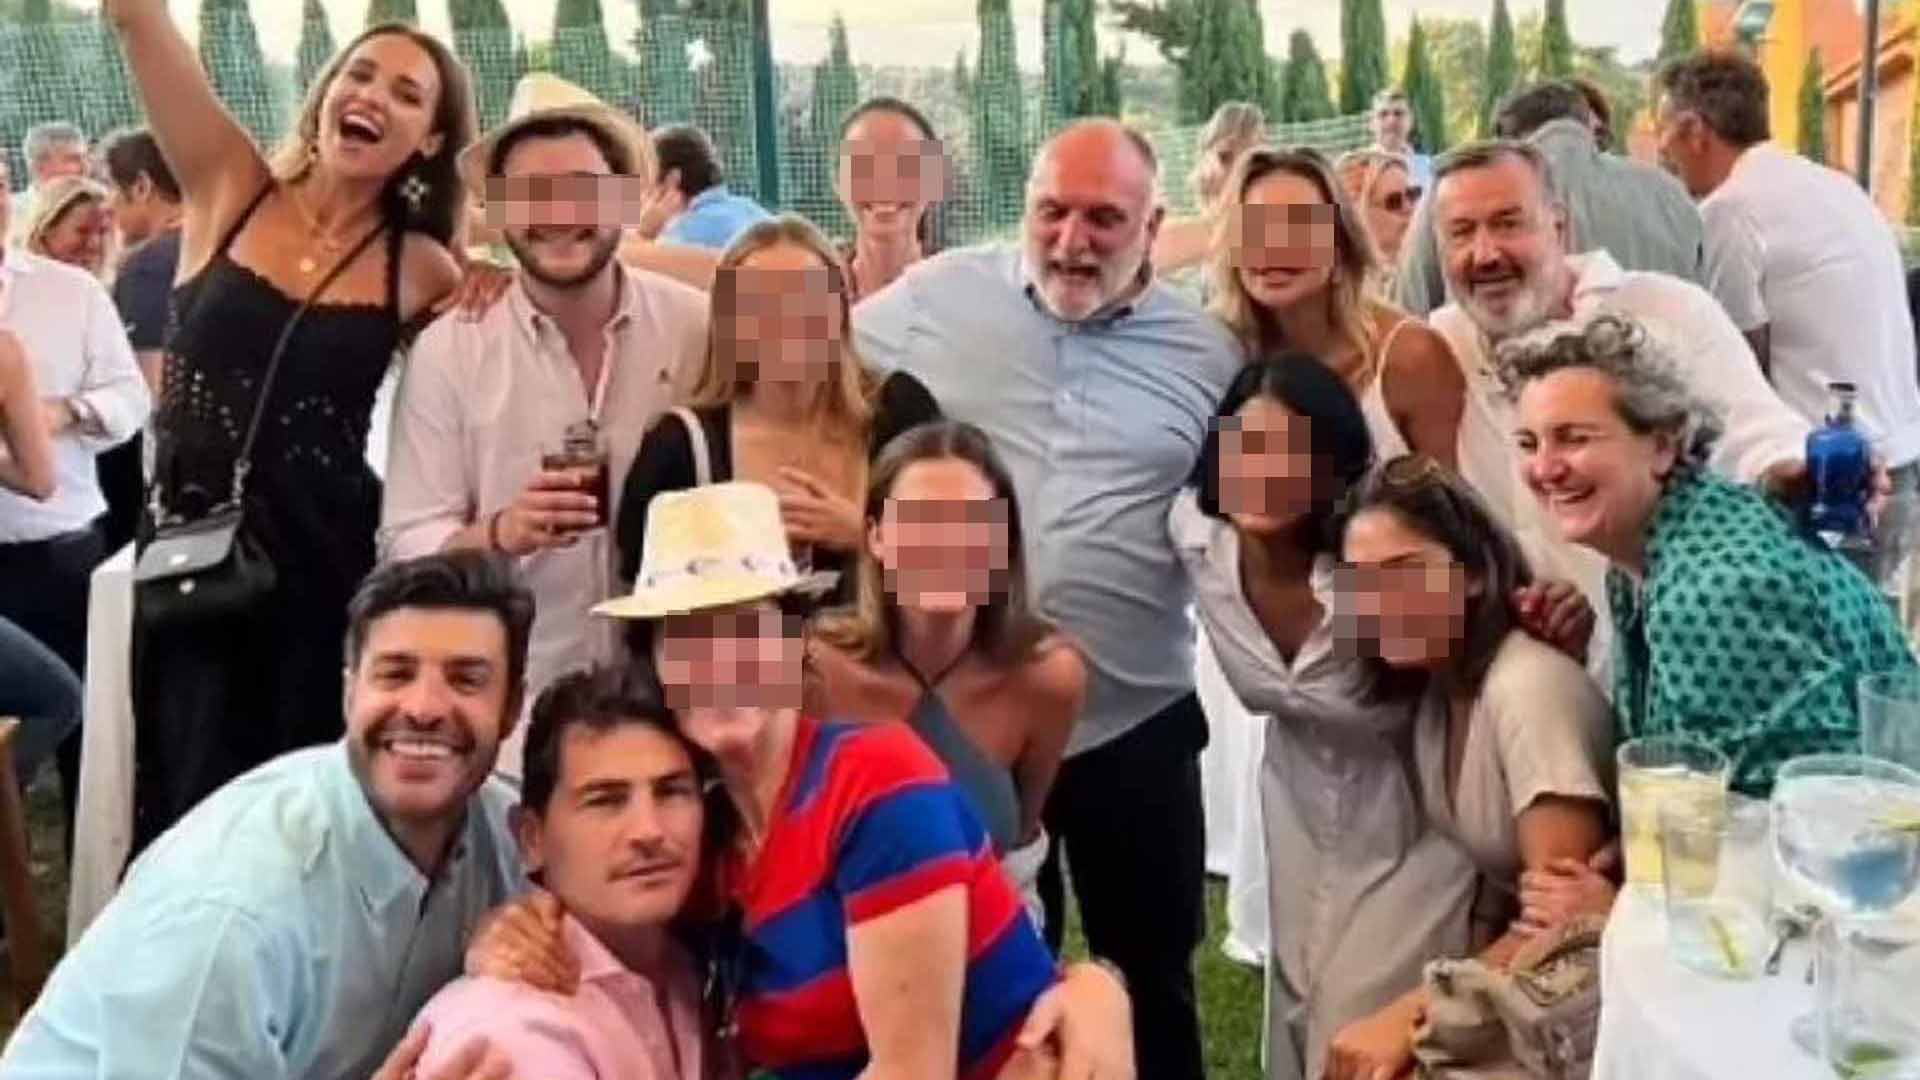 Paula Echevarría, Iker Casillas y el alcalde Almeida en una barbacoa viral junto a otros famosos